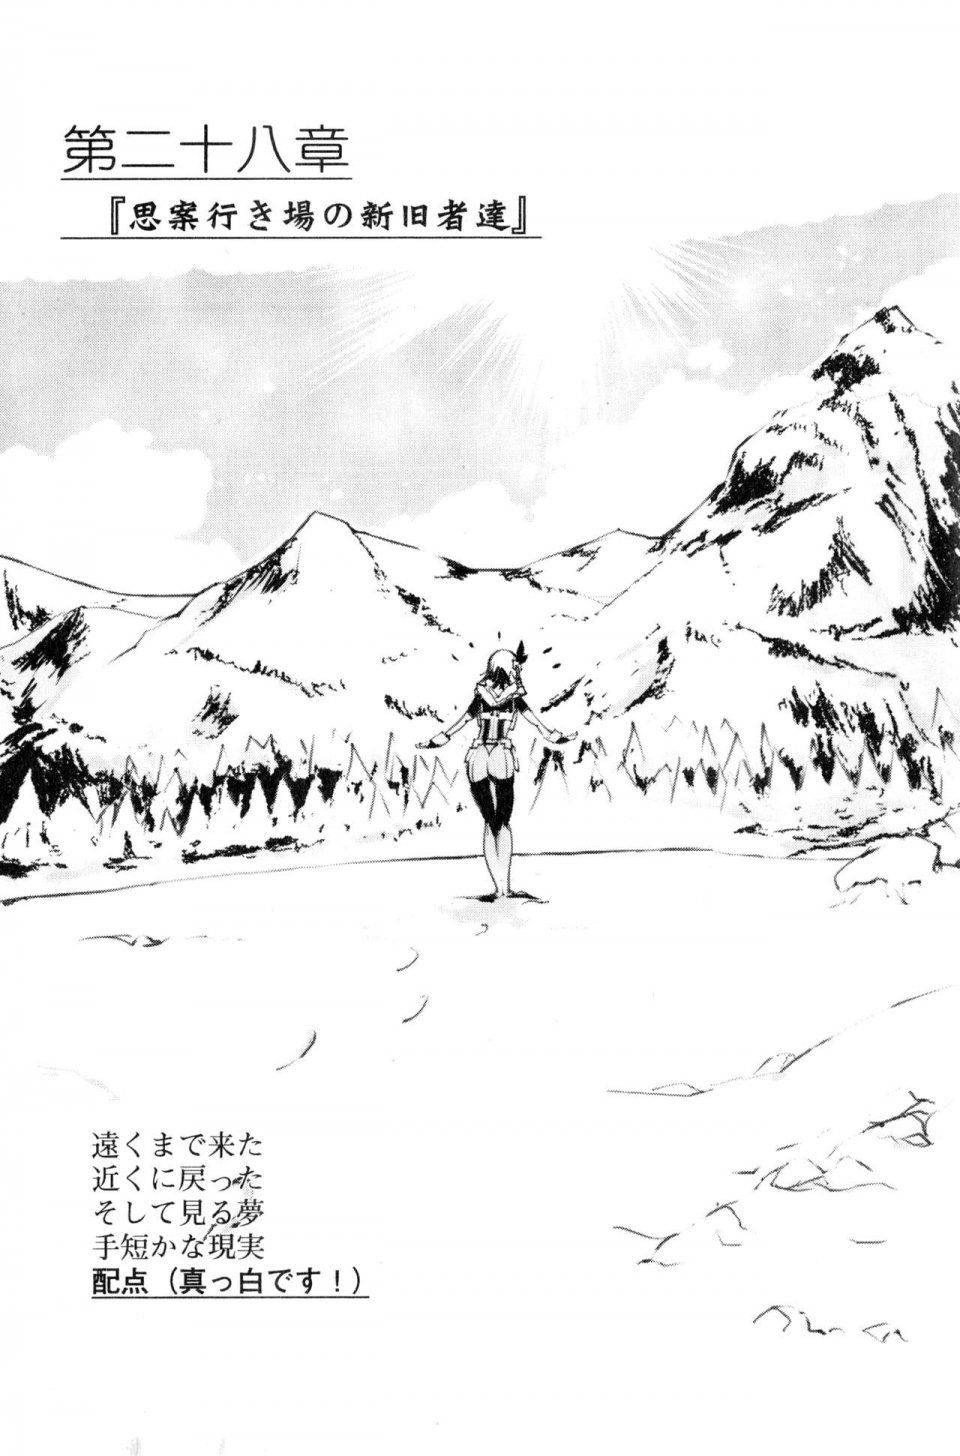 Kyoukai Senjou no Horizon LN Vol 20(8B) - Photo #19